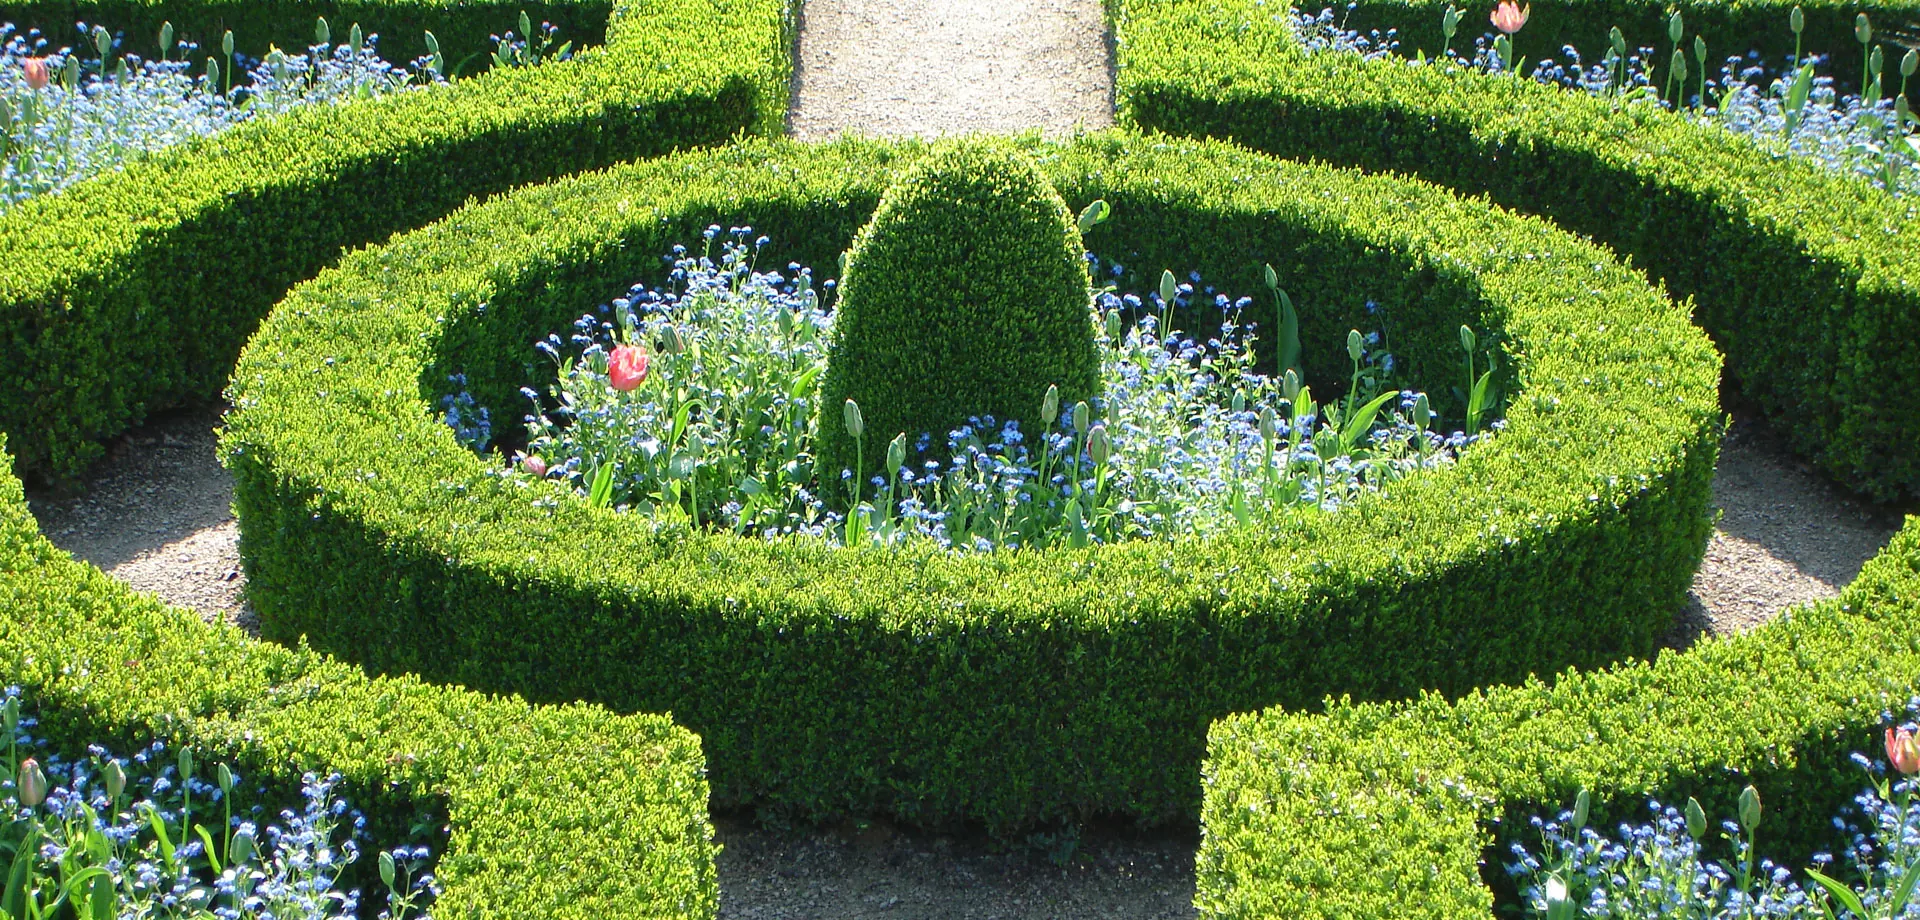 Chatsworth garden